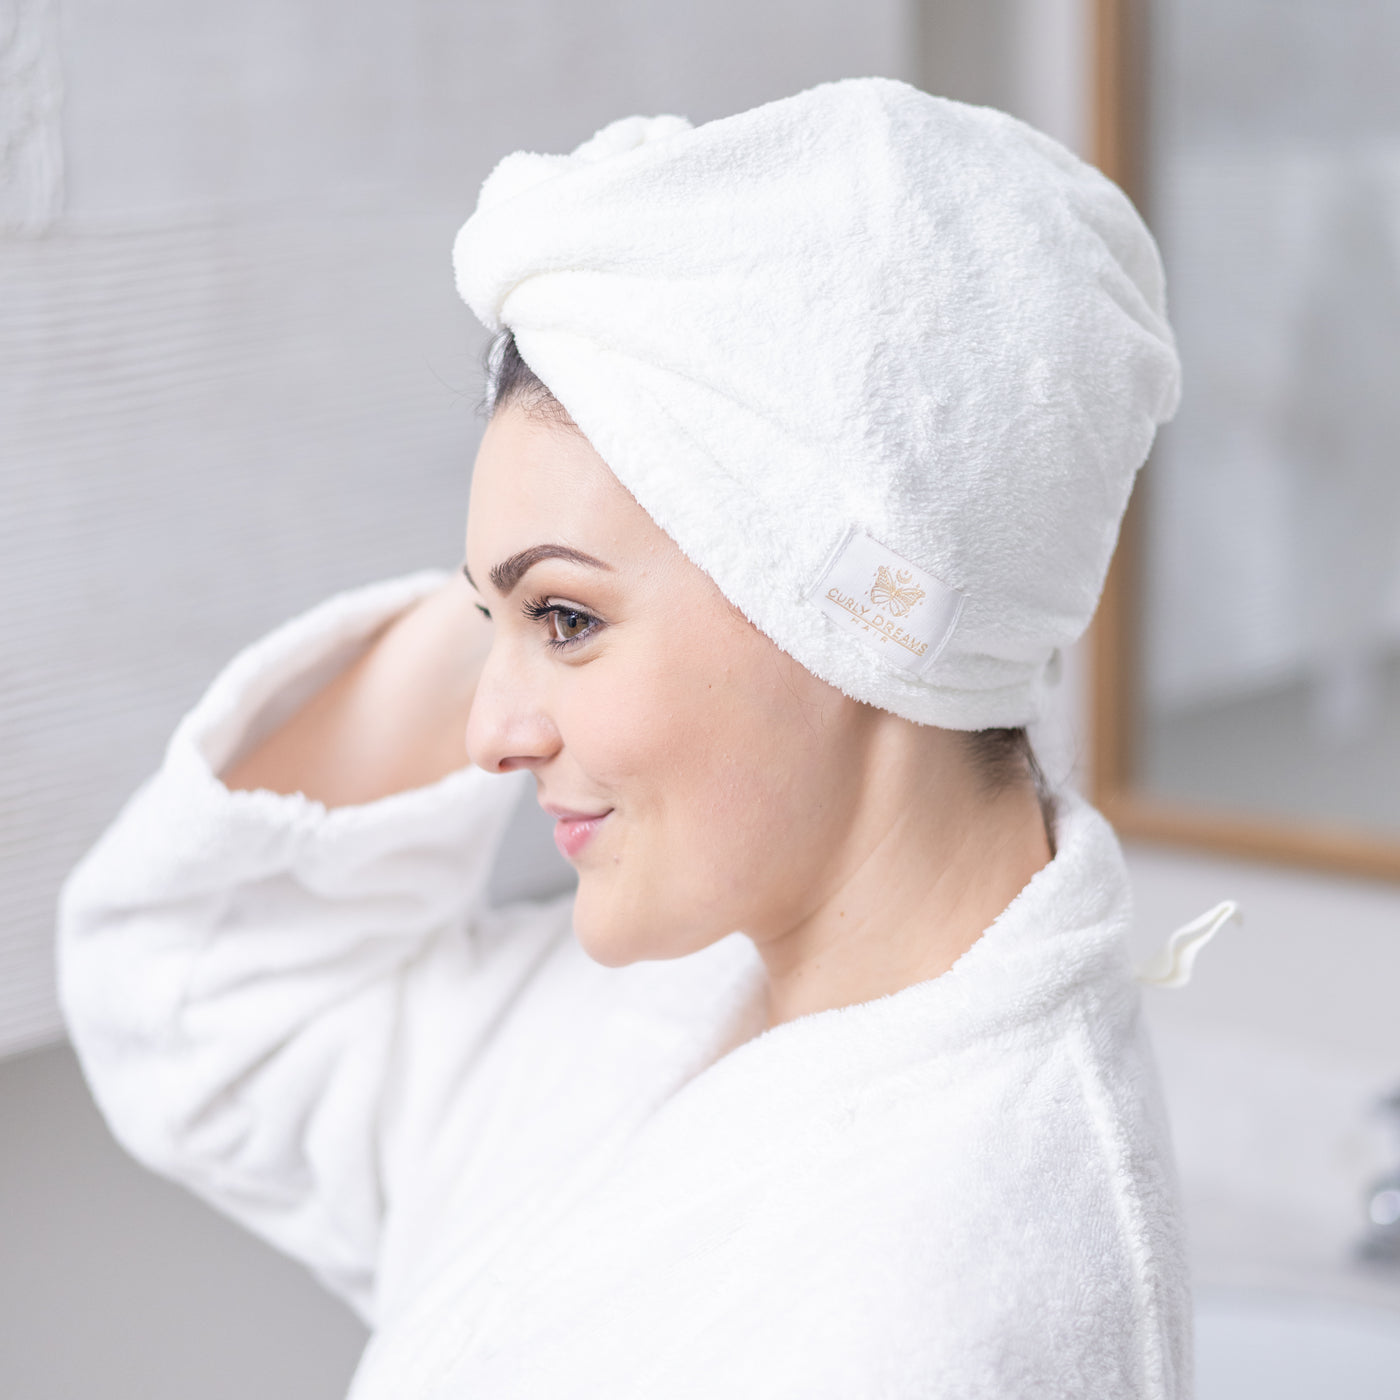 Asciugamano per capelli - turbante 100% microfibra (Bianca